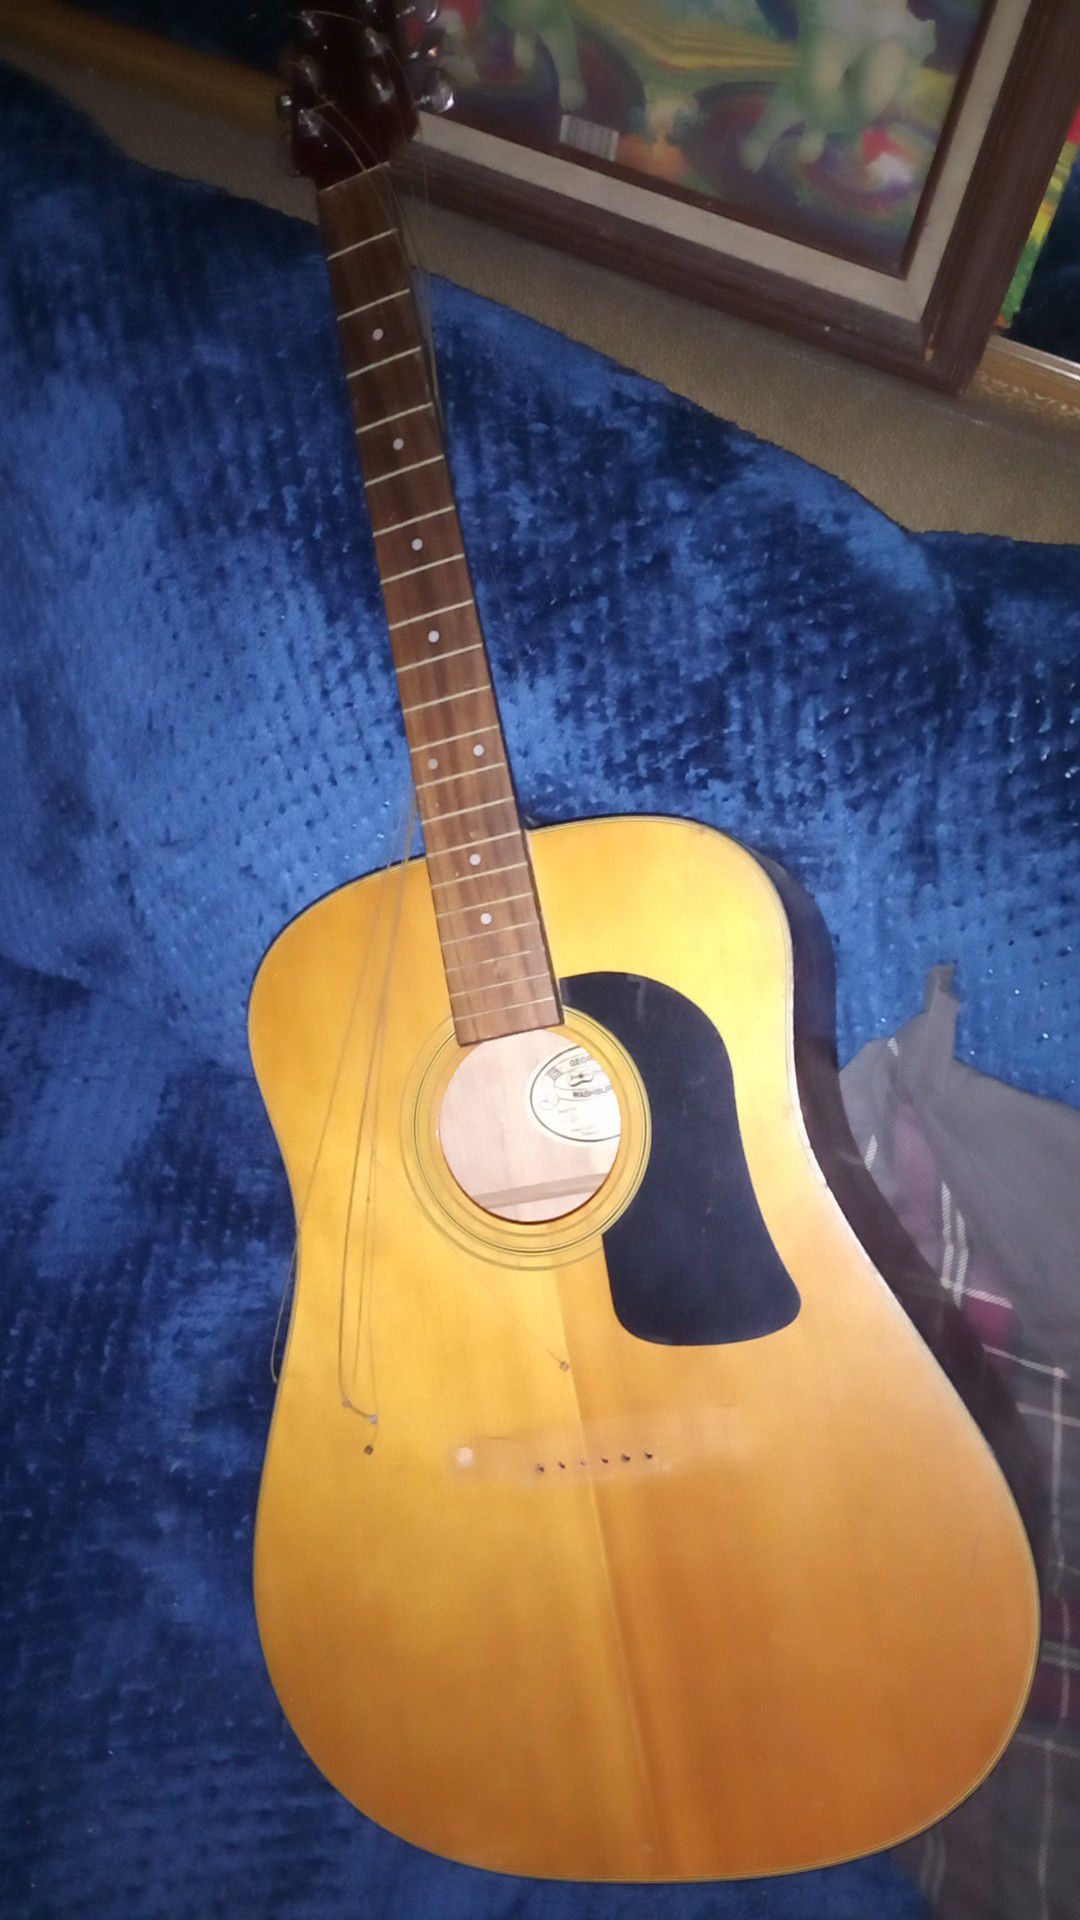 George Washburn acoustic guitar